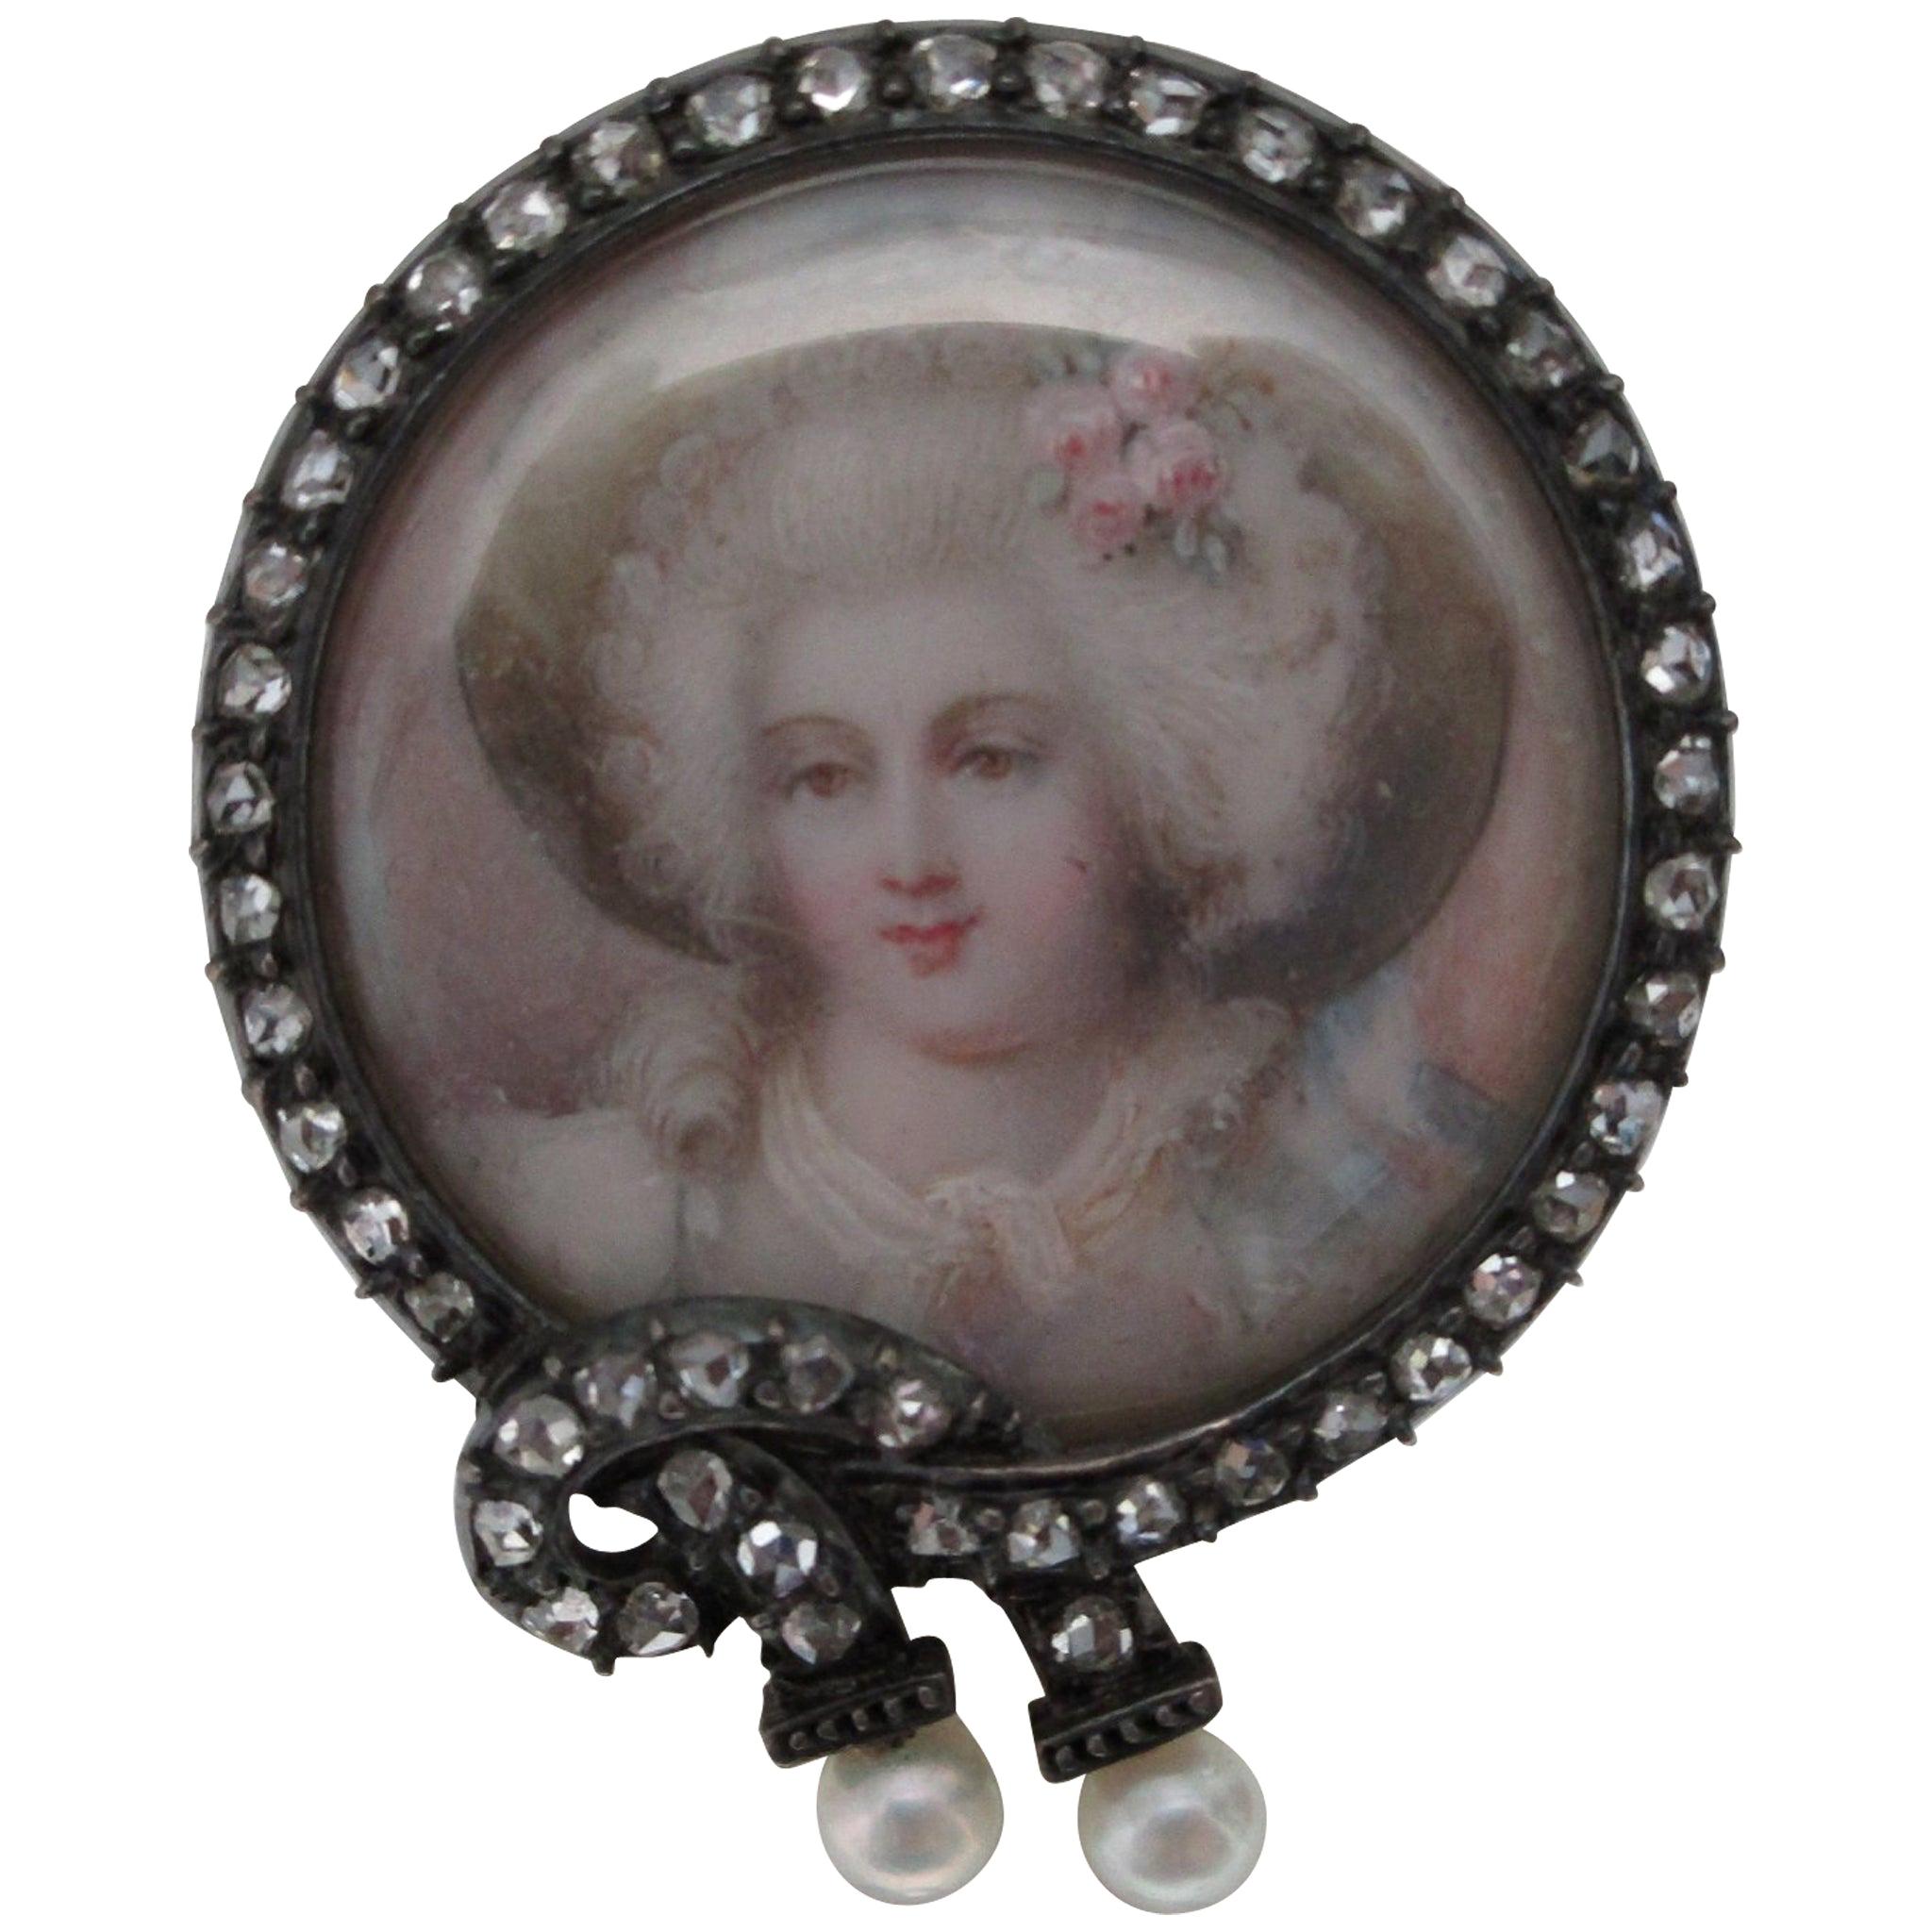 Natürliche Perlen und Diamanten im Rosenschliff auf einer Portraitnadel, Silber über Gold bemalt